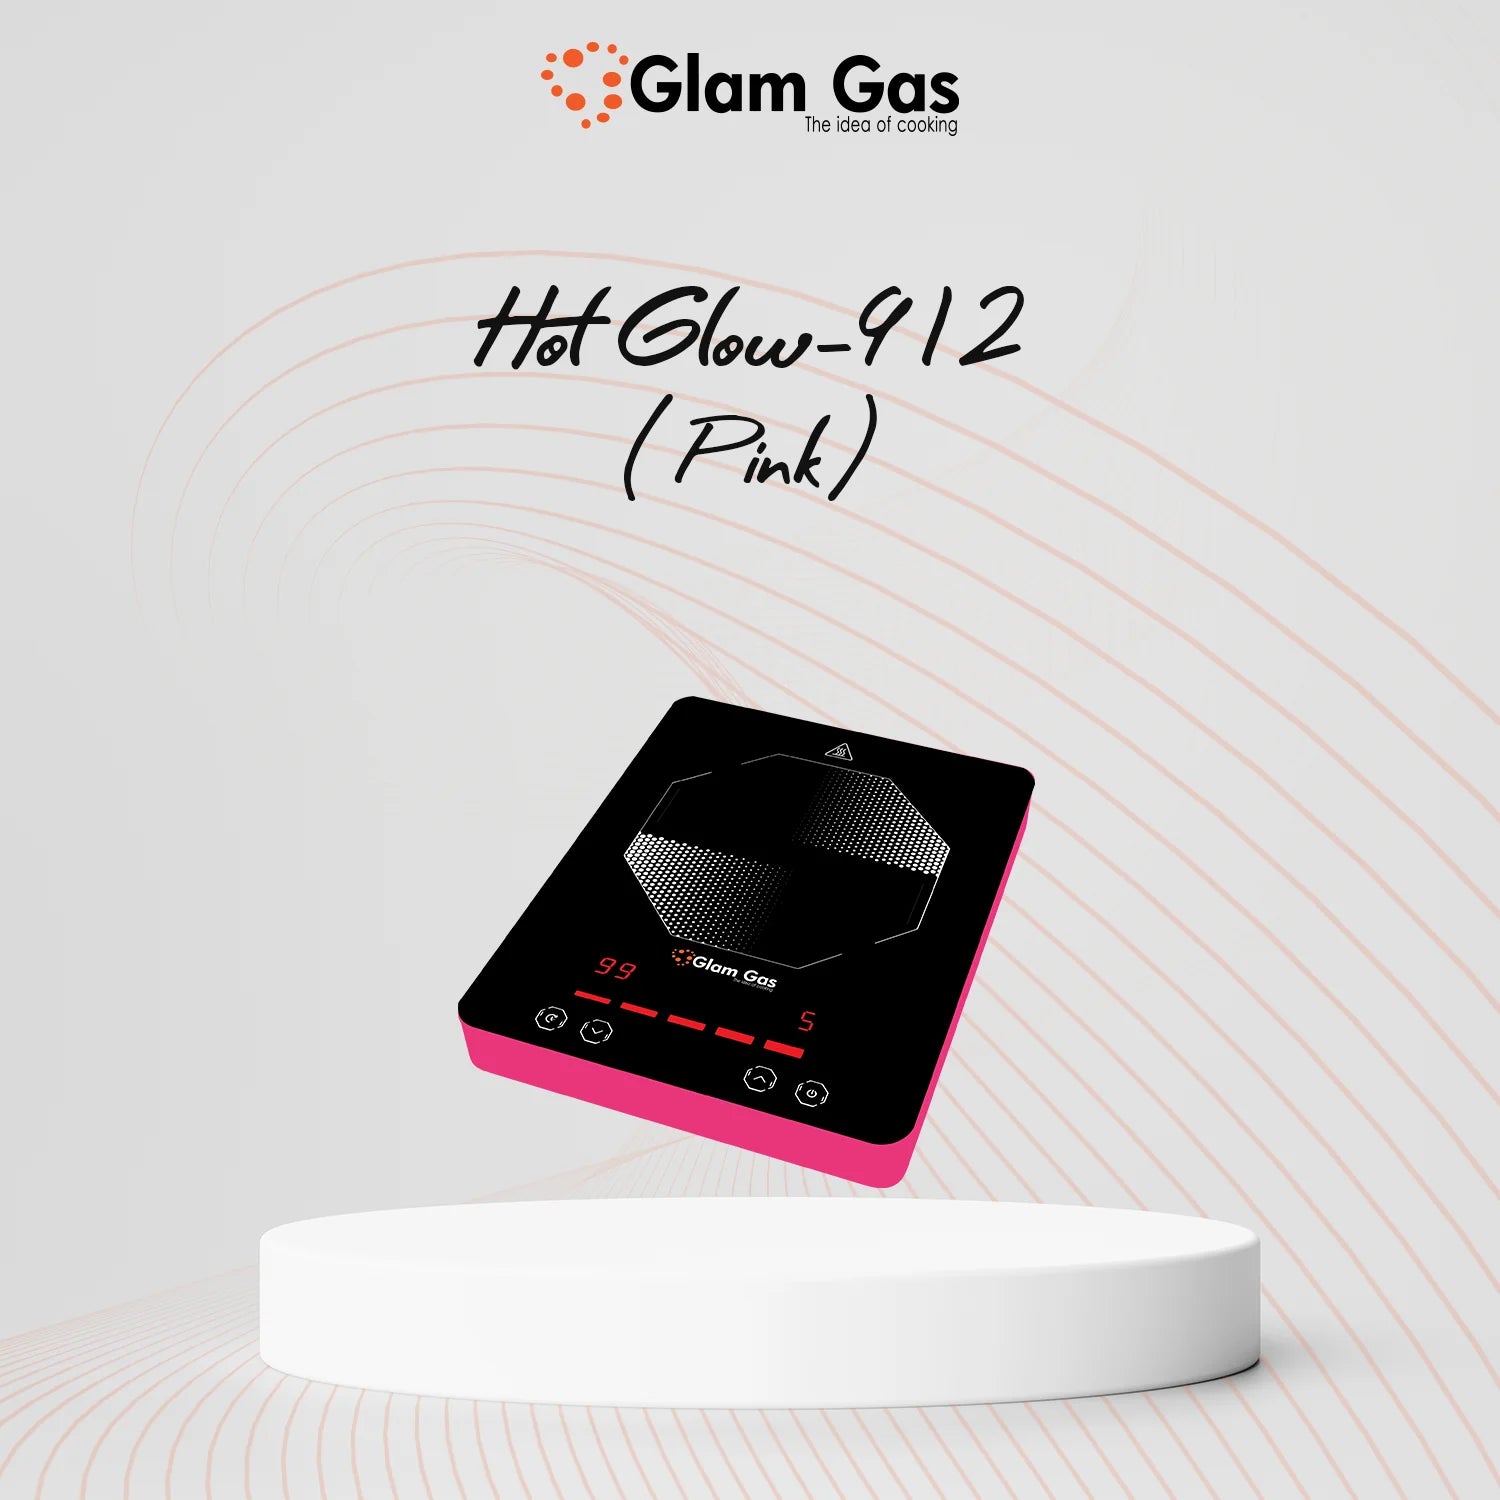 hot glow 912 - pink